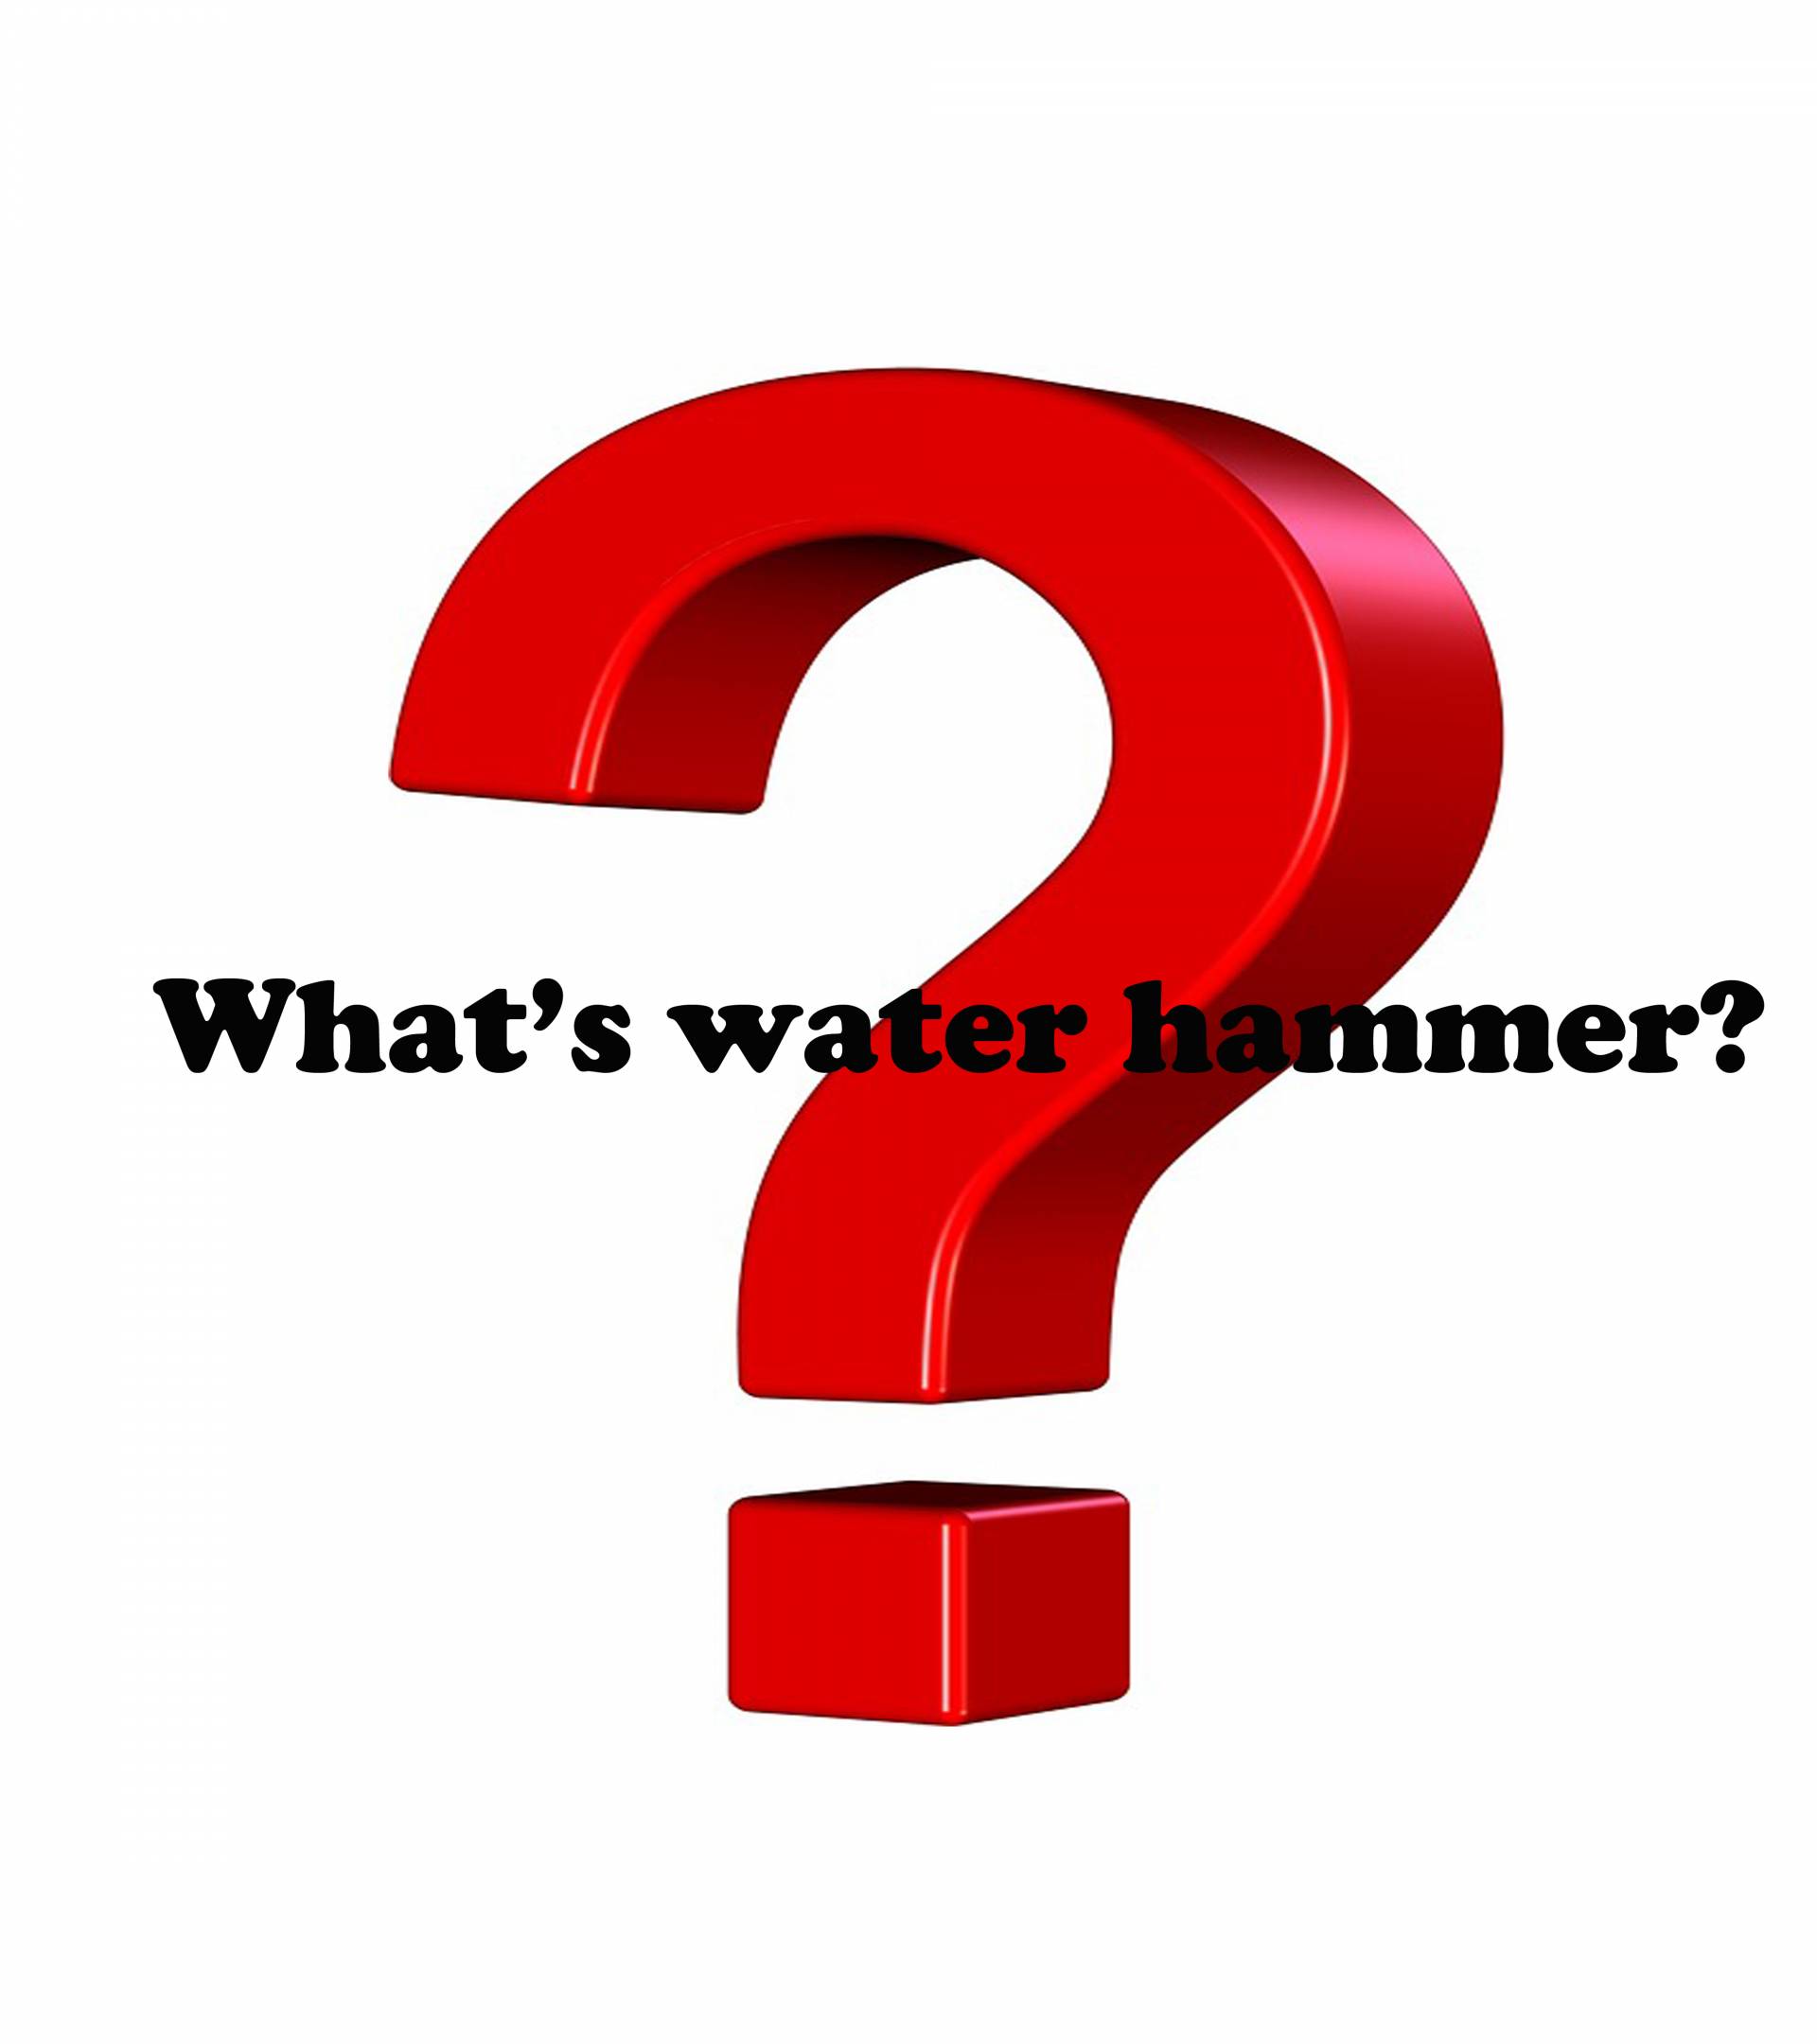 น้ำตกเสียงเหมือนค้อนหรือเสียงดังที่เกิดขึ้นเมื่อน้ำหยุดกระเด็นหรือหยุดไหลอย่างรวดเร็วในท่อ